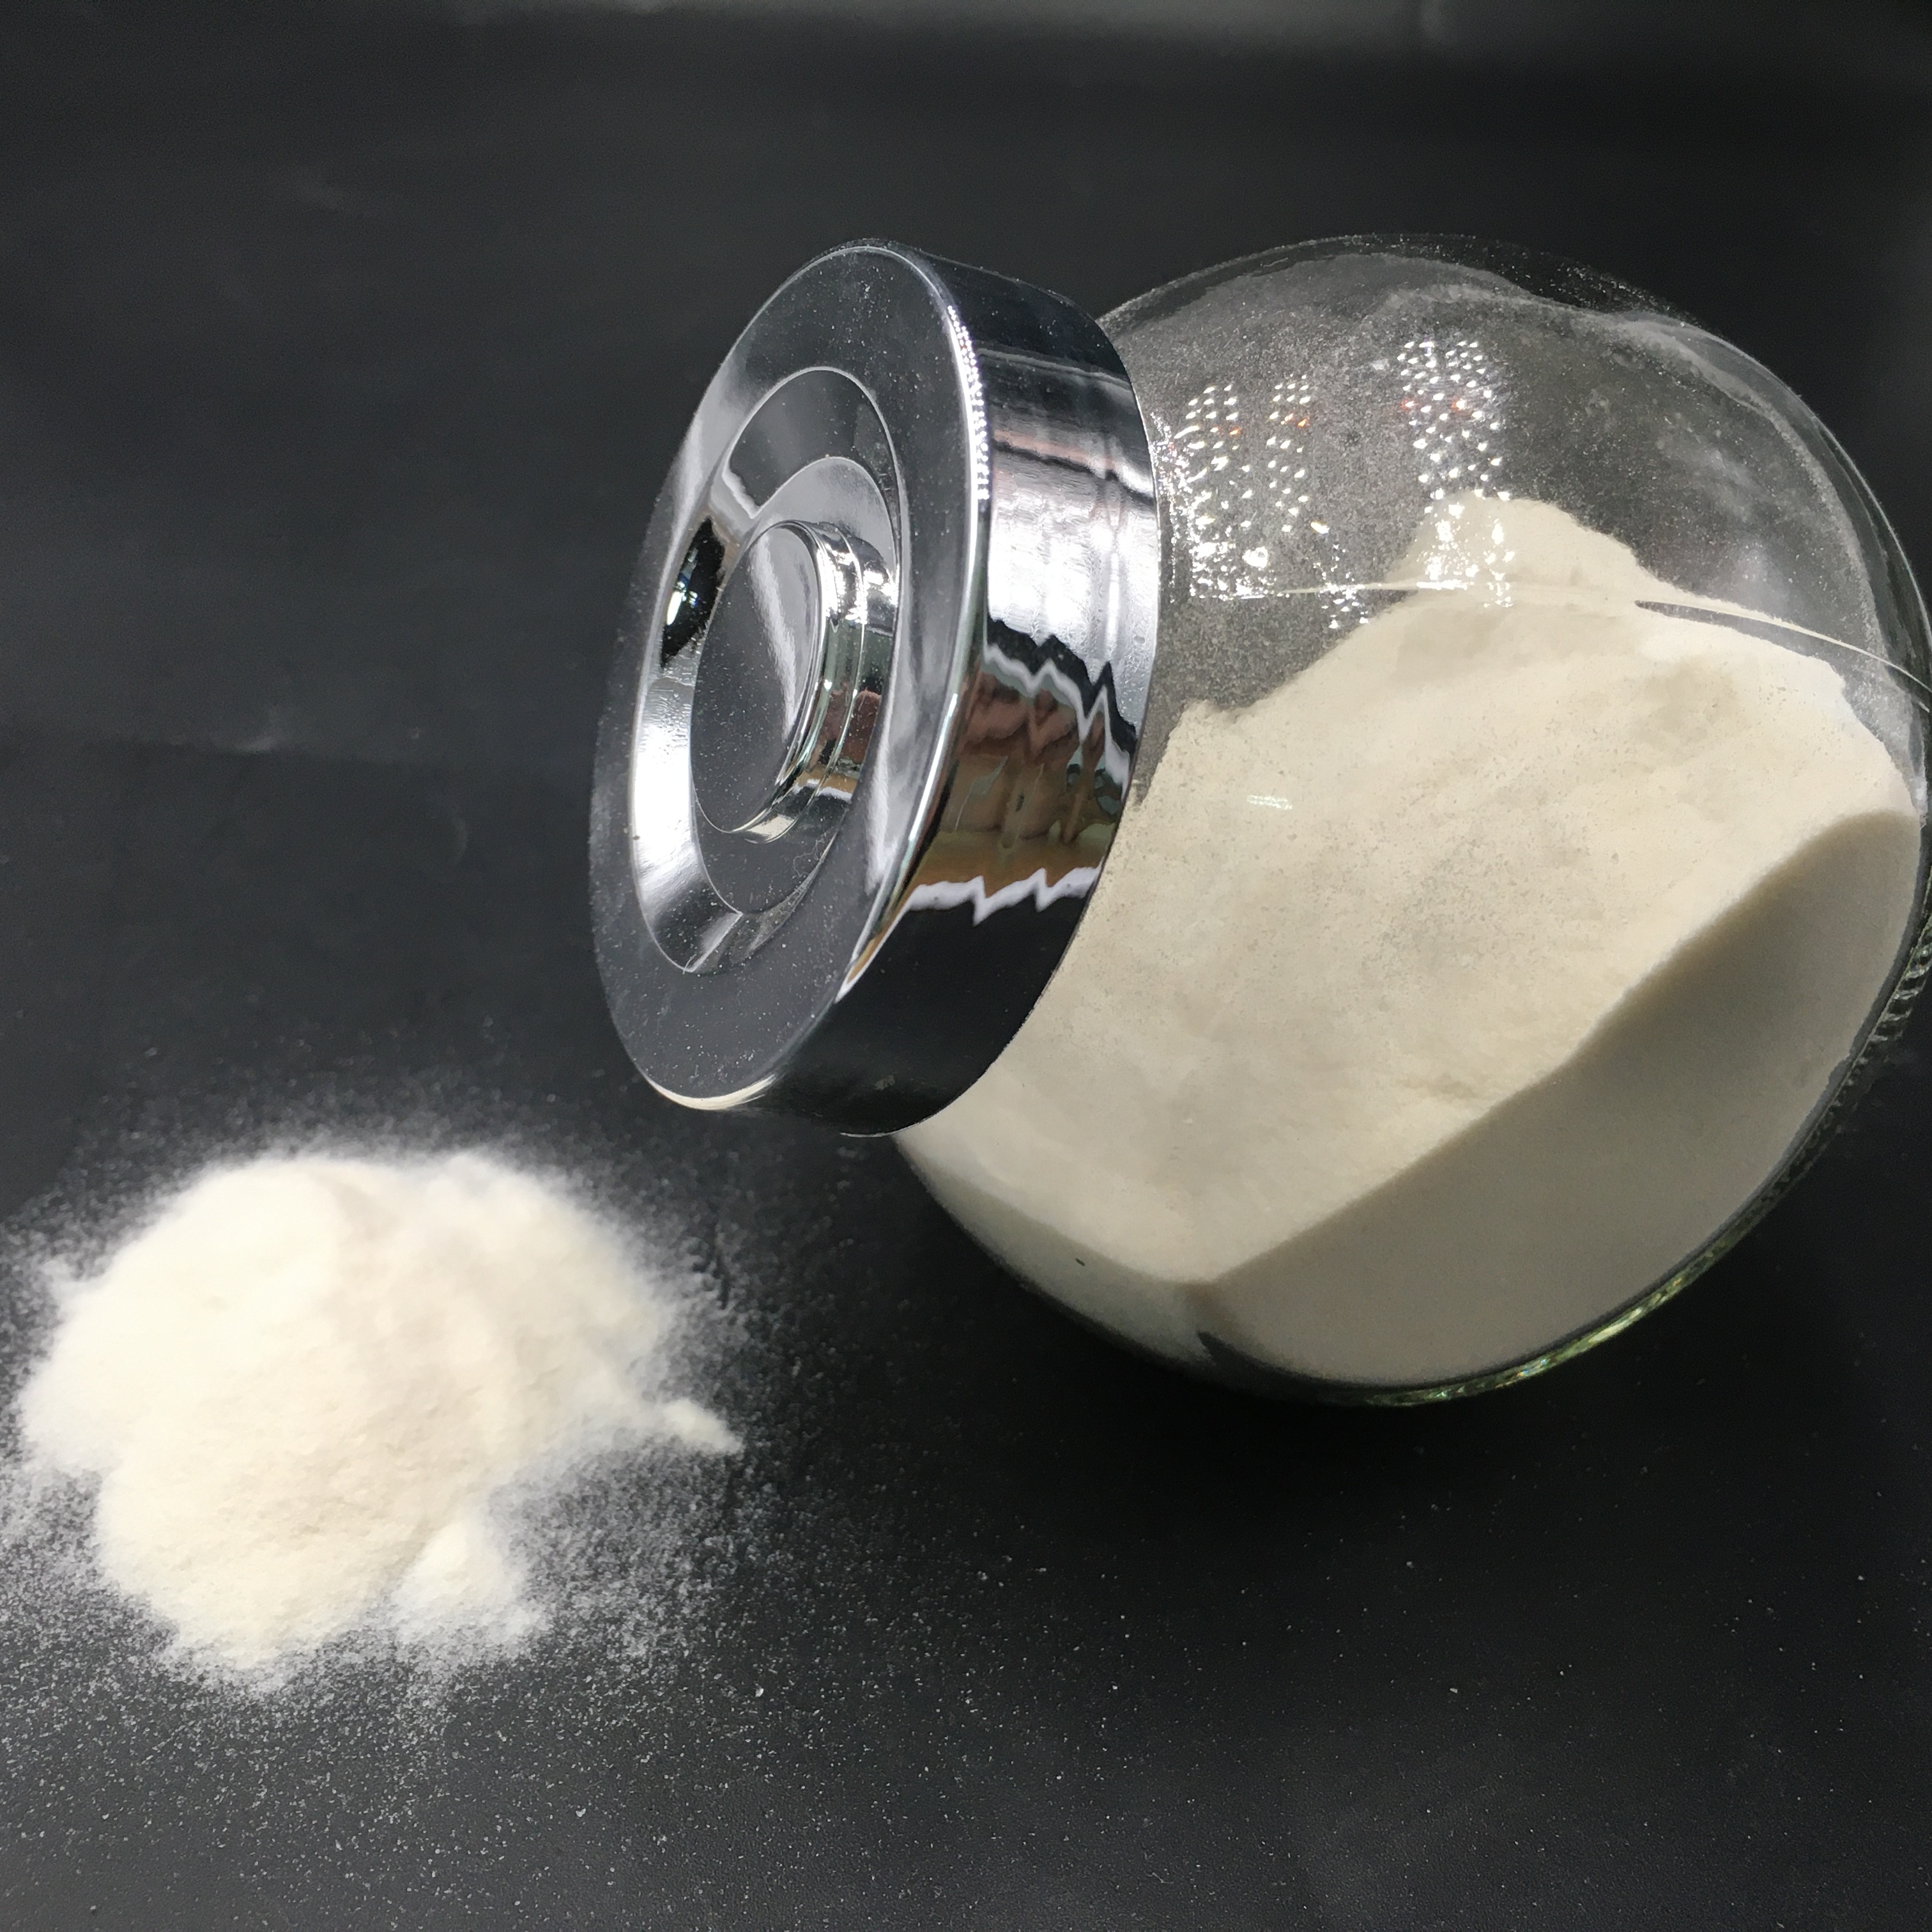 Venta caliente agar agar grado pahramceutical con estabilizador de precio razonable Mejor Estabilización de polvo de caramelo suave más grueso superior Natural CAS No. 9002-18-0